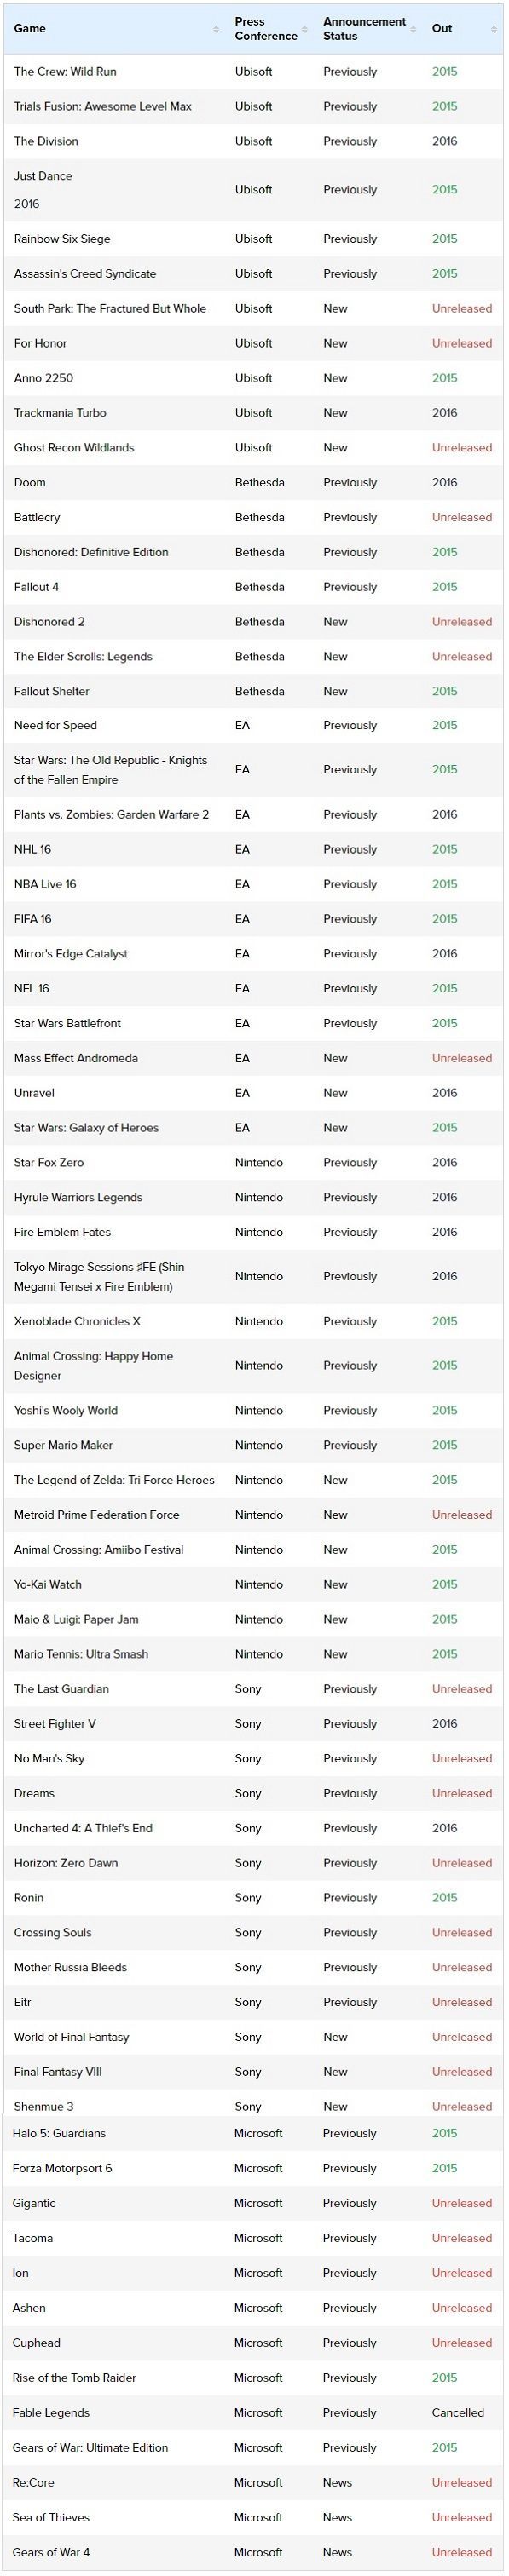 Lista gier prezentowanych na konferencjach gigantów podczas targów E3 2015 / Źródło: Finder.com.au.